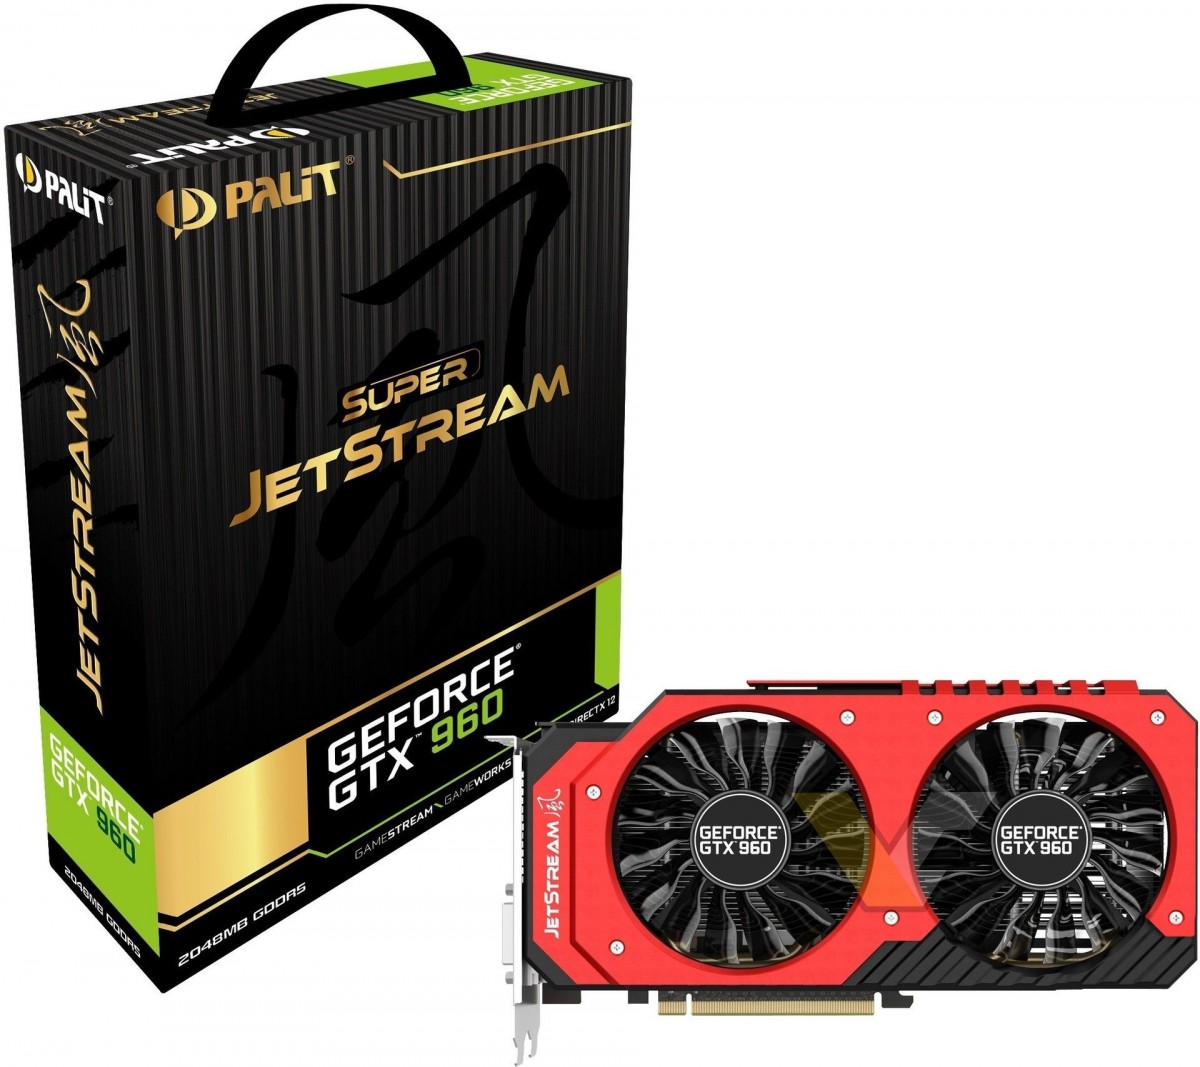 Palit launches GeForce GTX 960 (Super) JetStream | VideoCardz.com